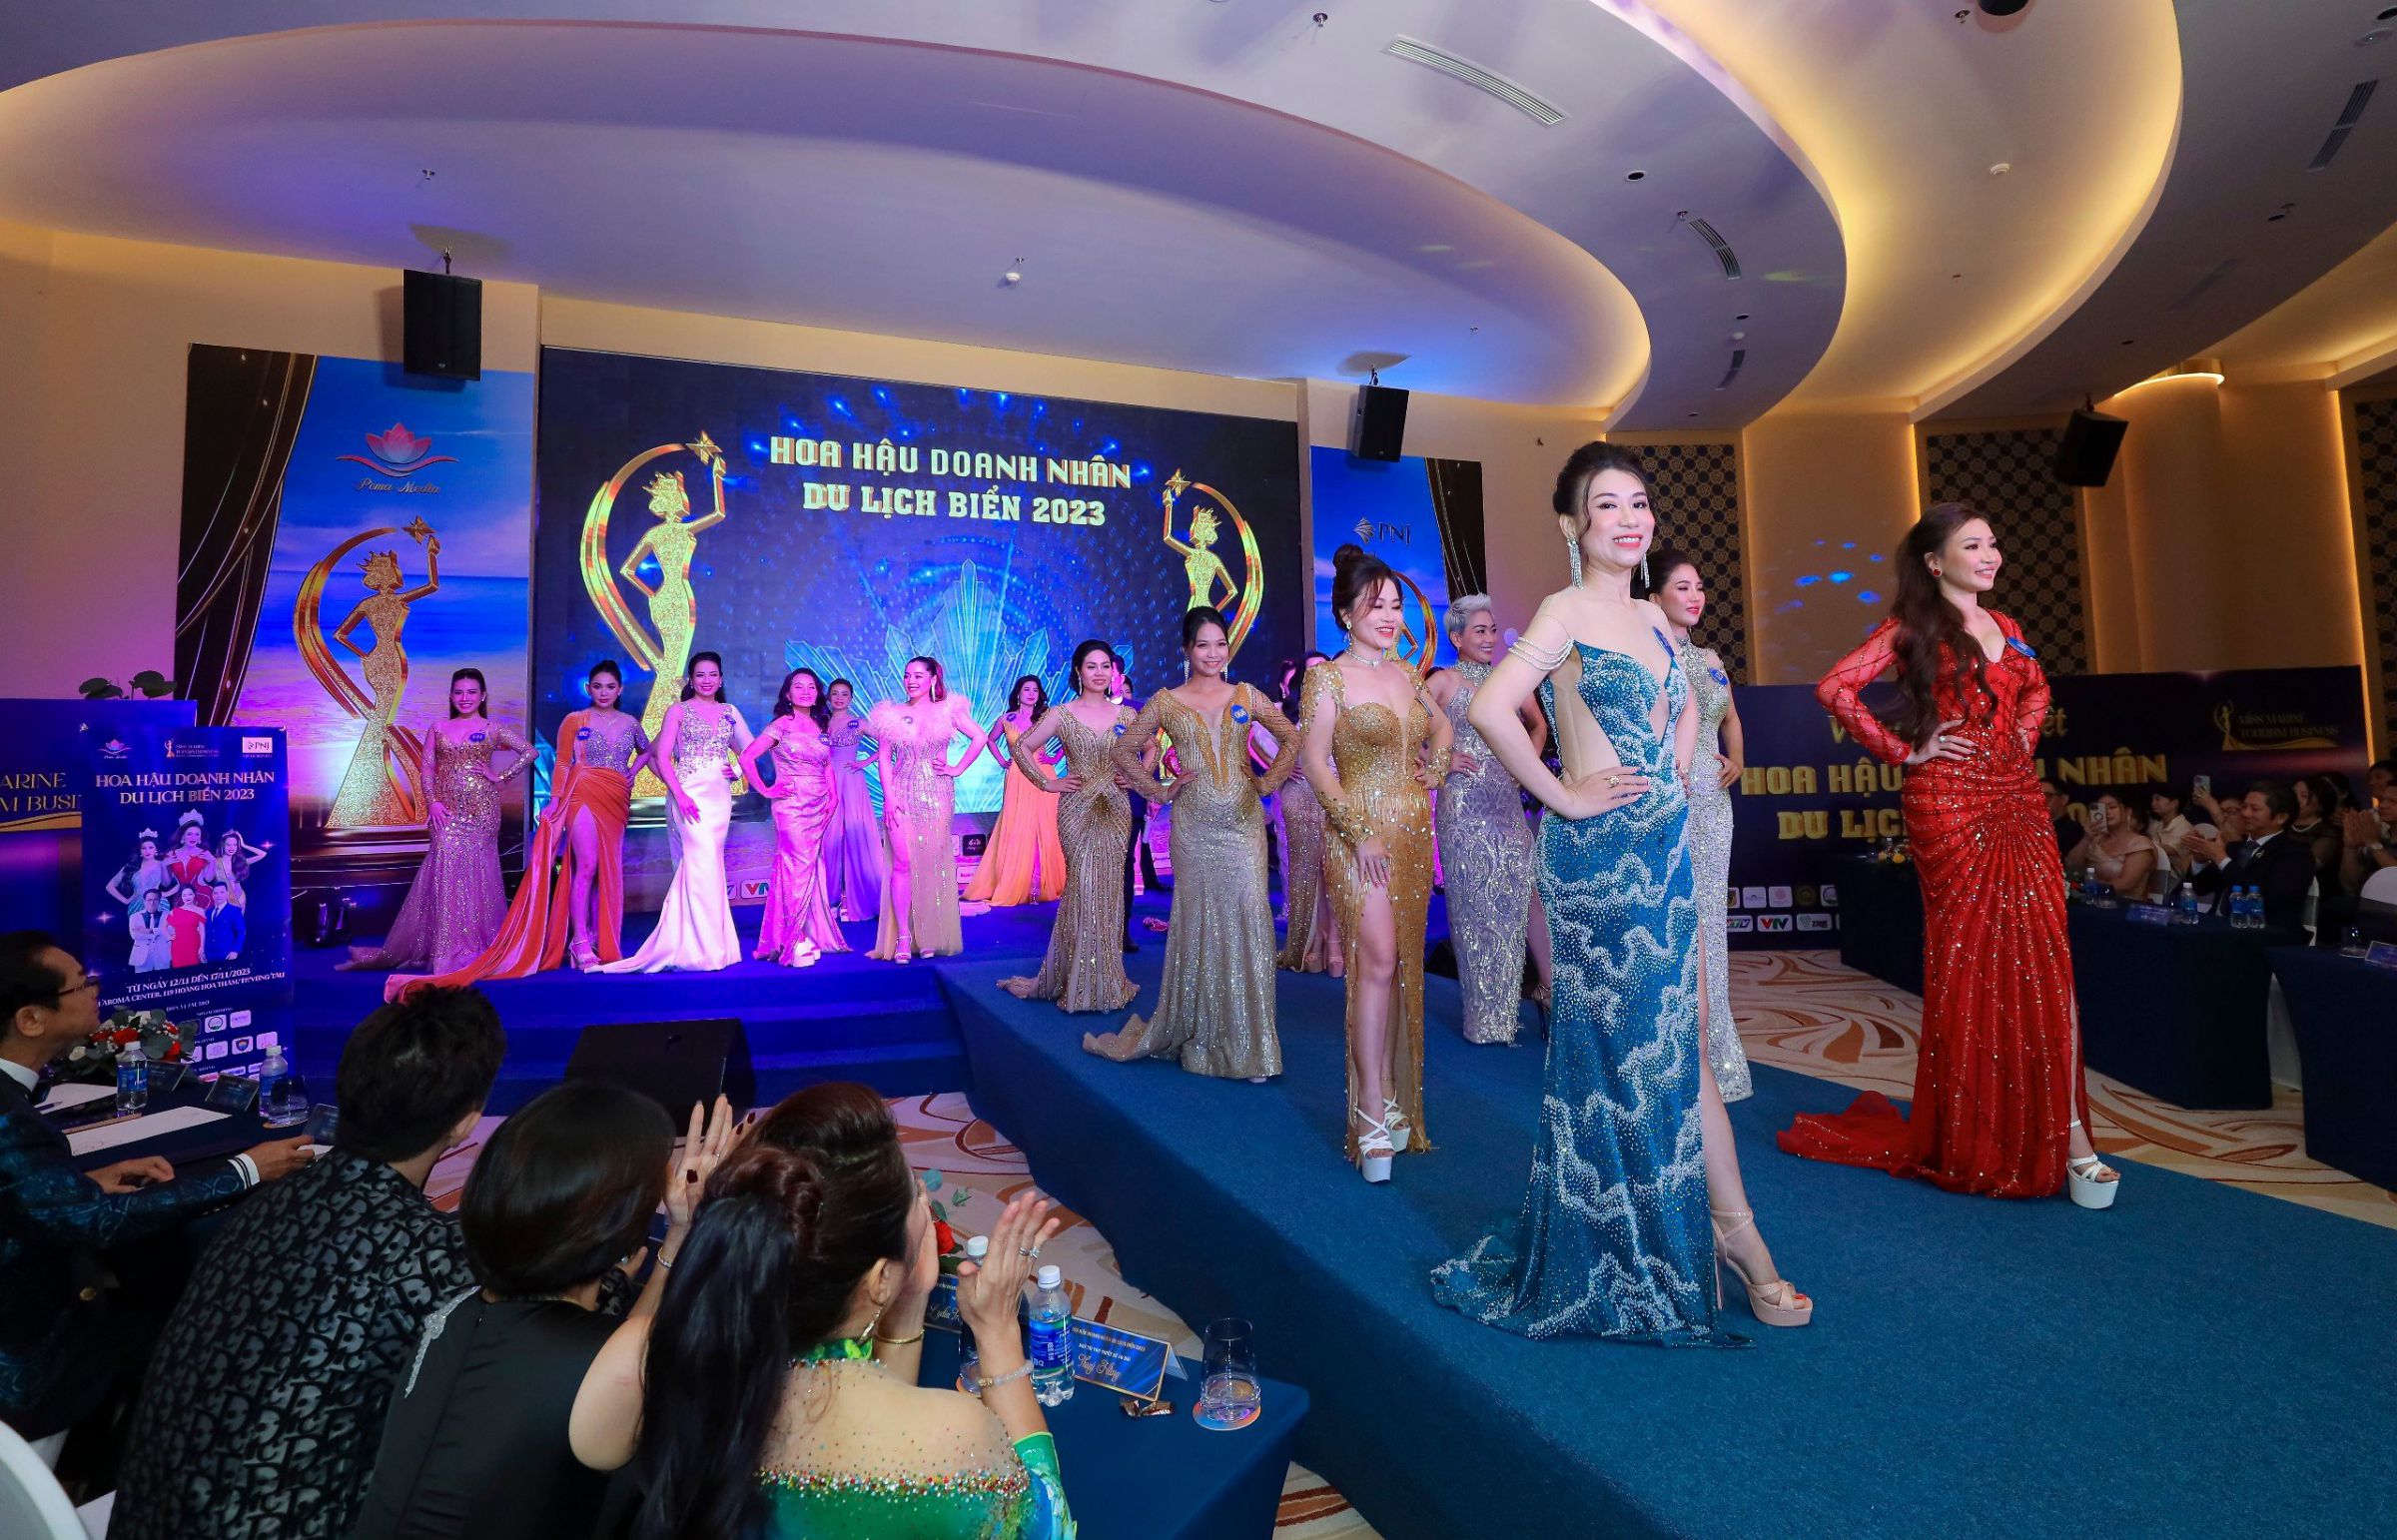 Toàn cảnh Đêm Bán kết Hoa hậu Doanh nhân Du lịch Biển 2023